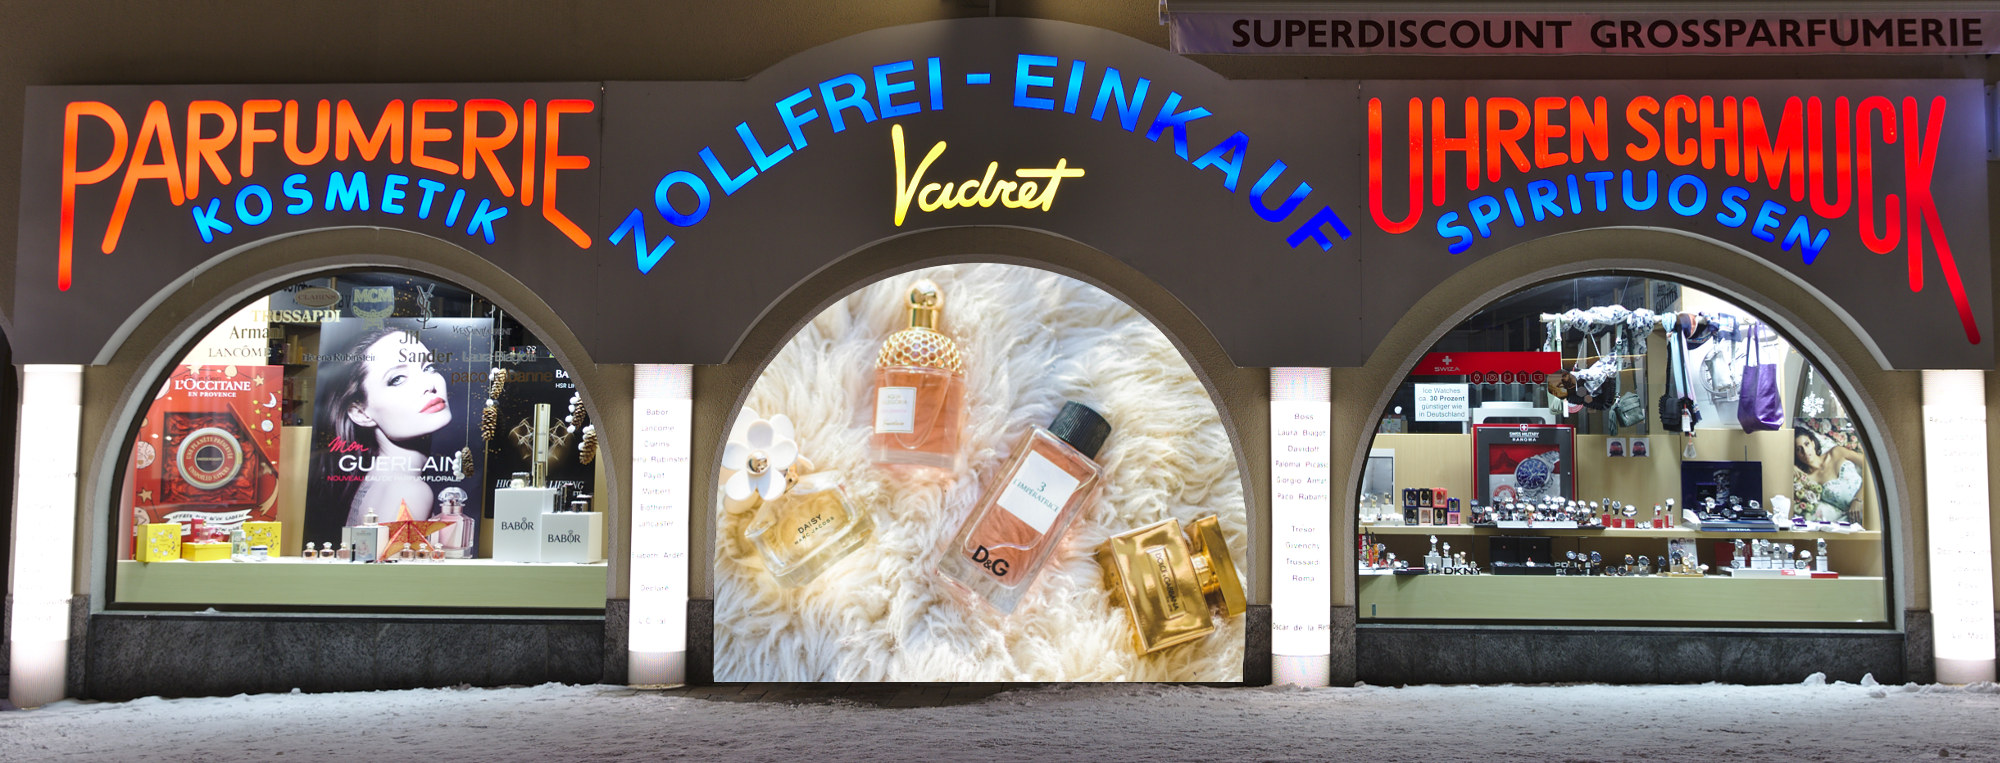 Zollfrei-Einkauf Vadret Front Parfum